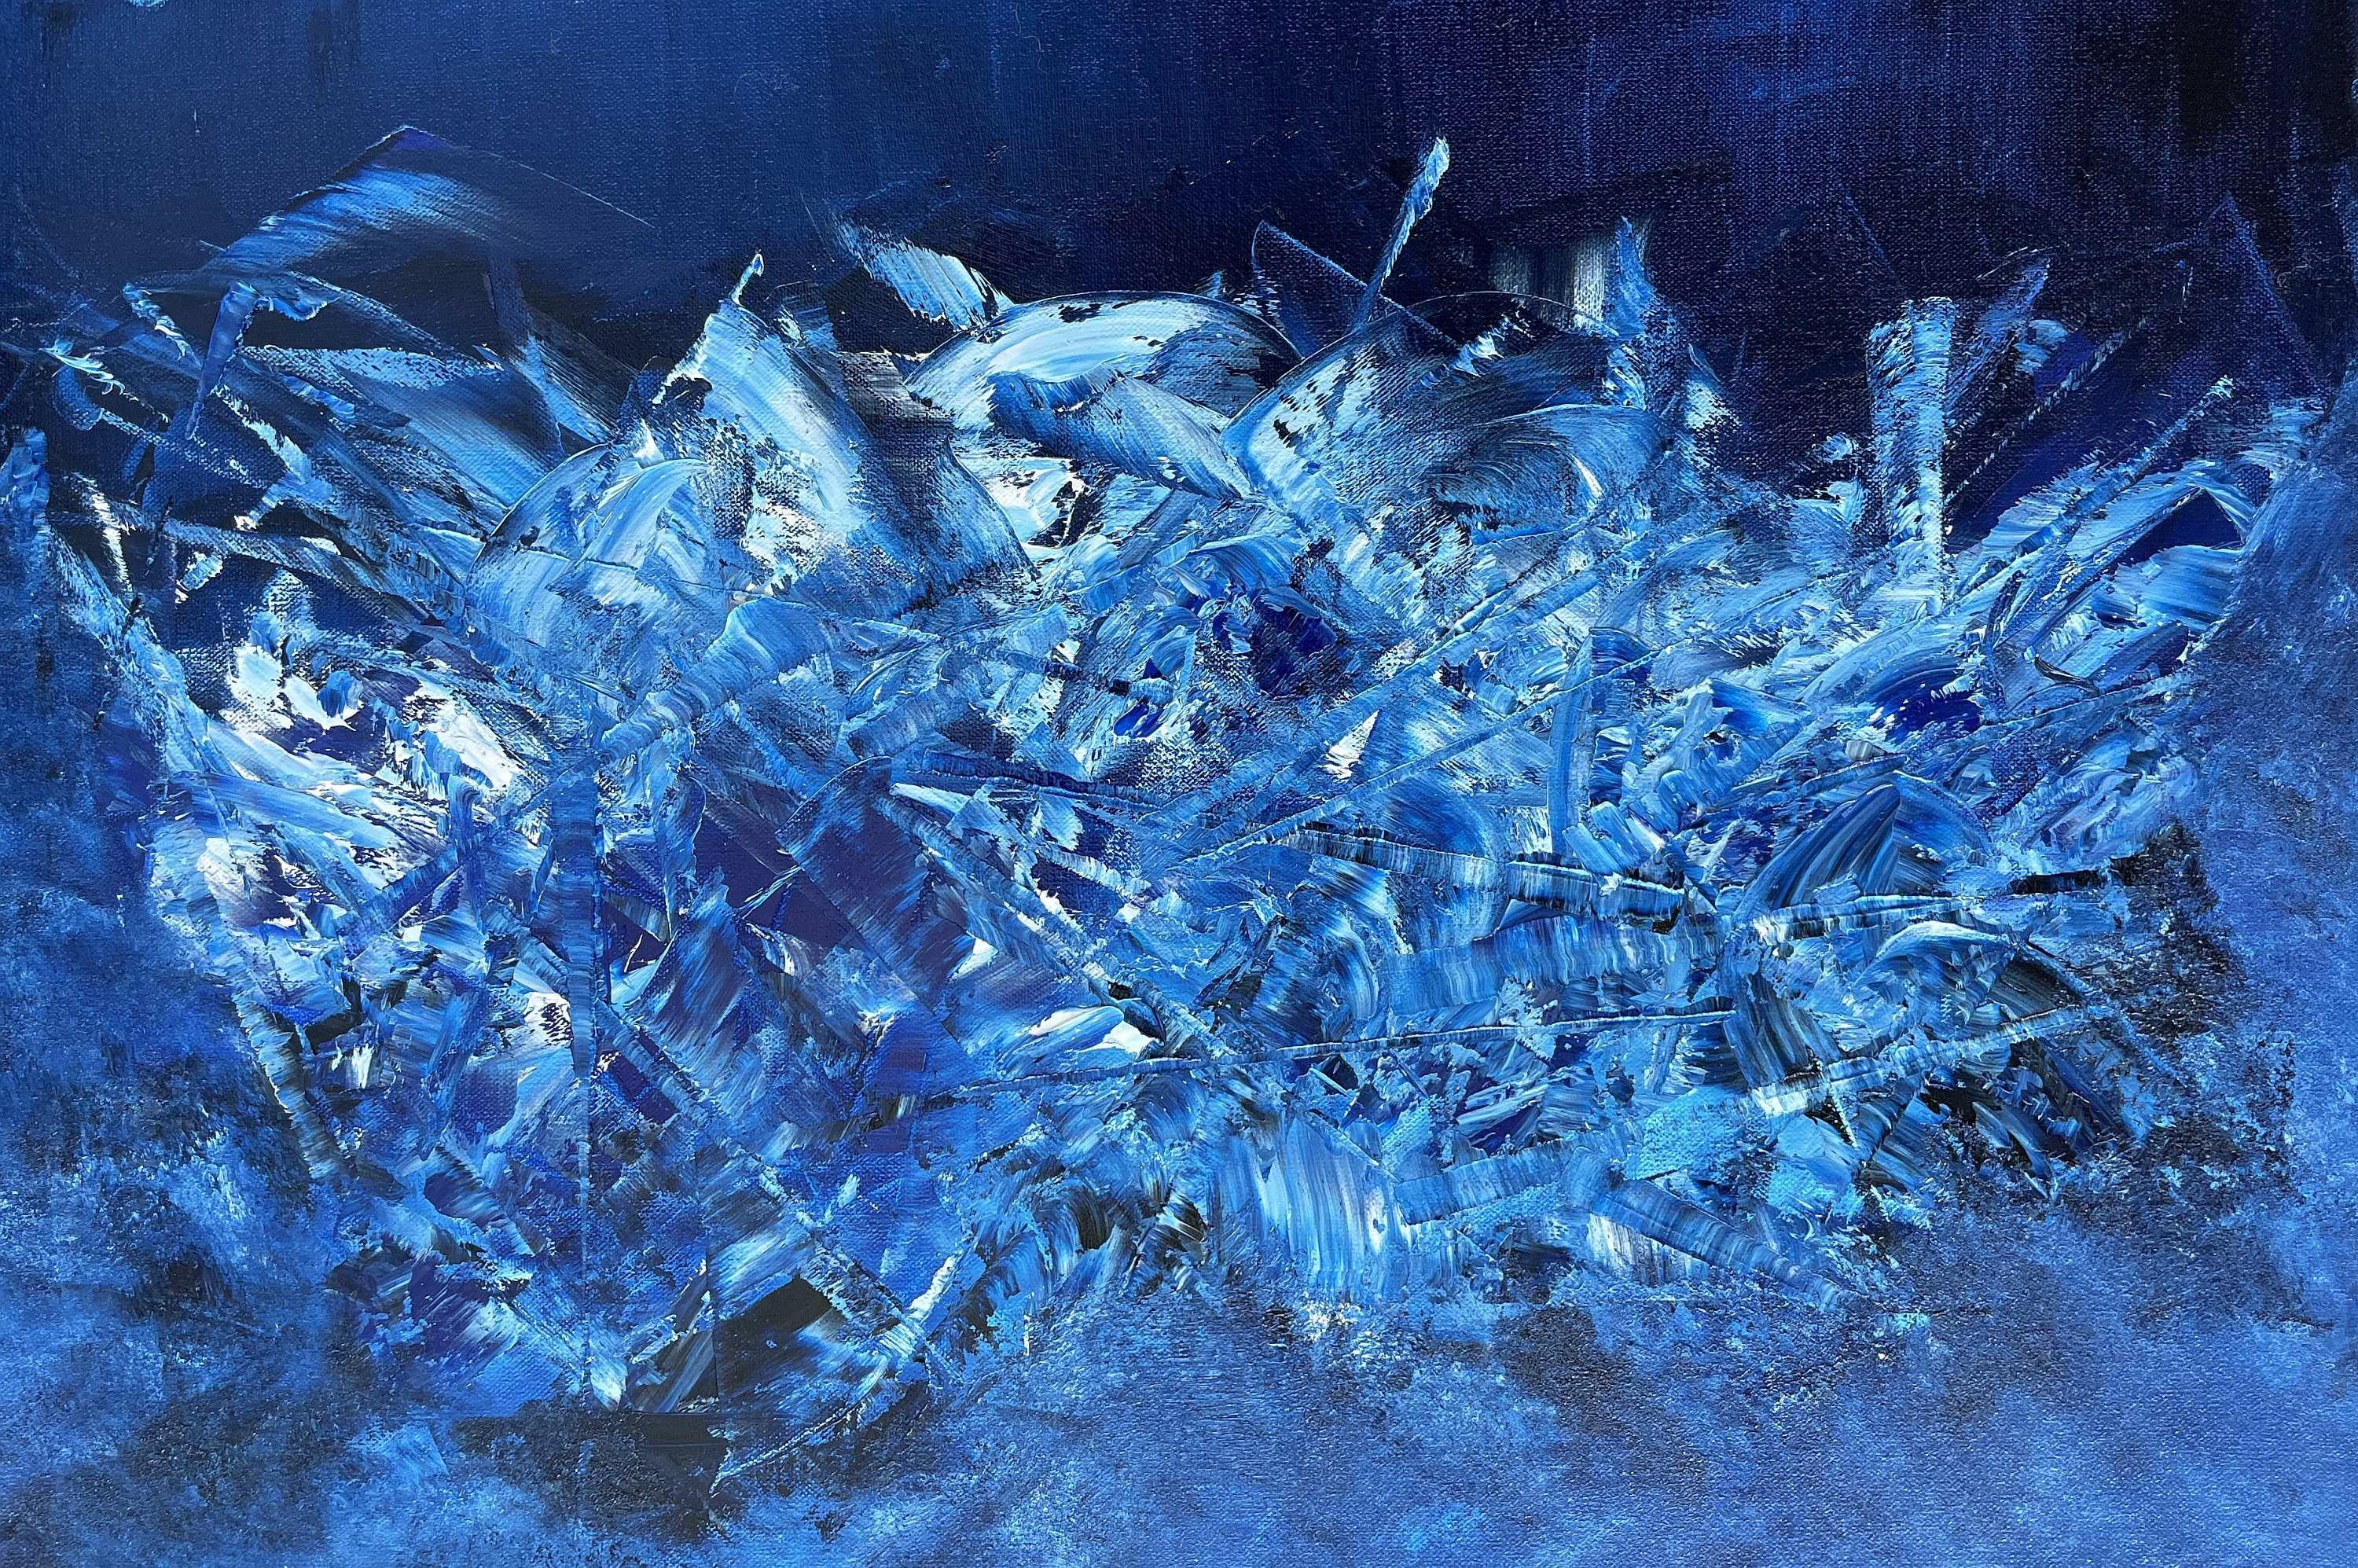 Blau kosmisch 02 – Painting von Juan Jose Garay